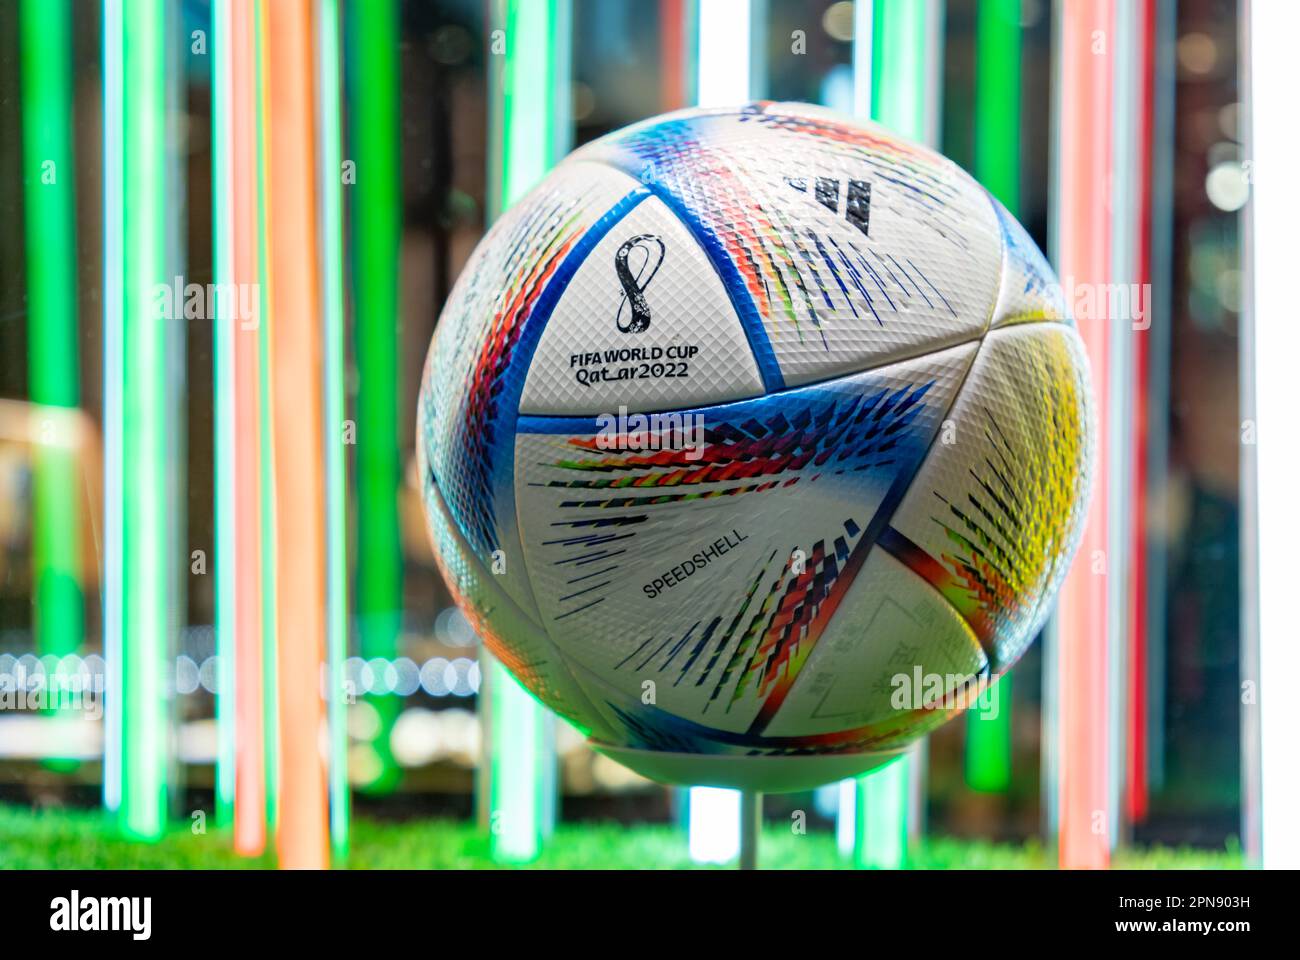 Una foto di al Rihla, la Coppa del mondo FIFA 2022 Adidas in Qatar palla ufficiale. Foto Stock